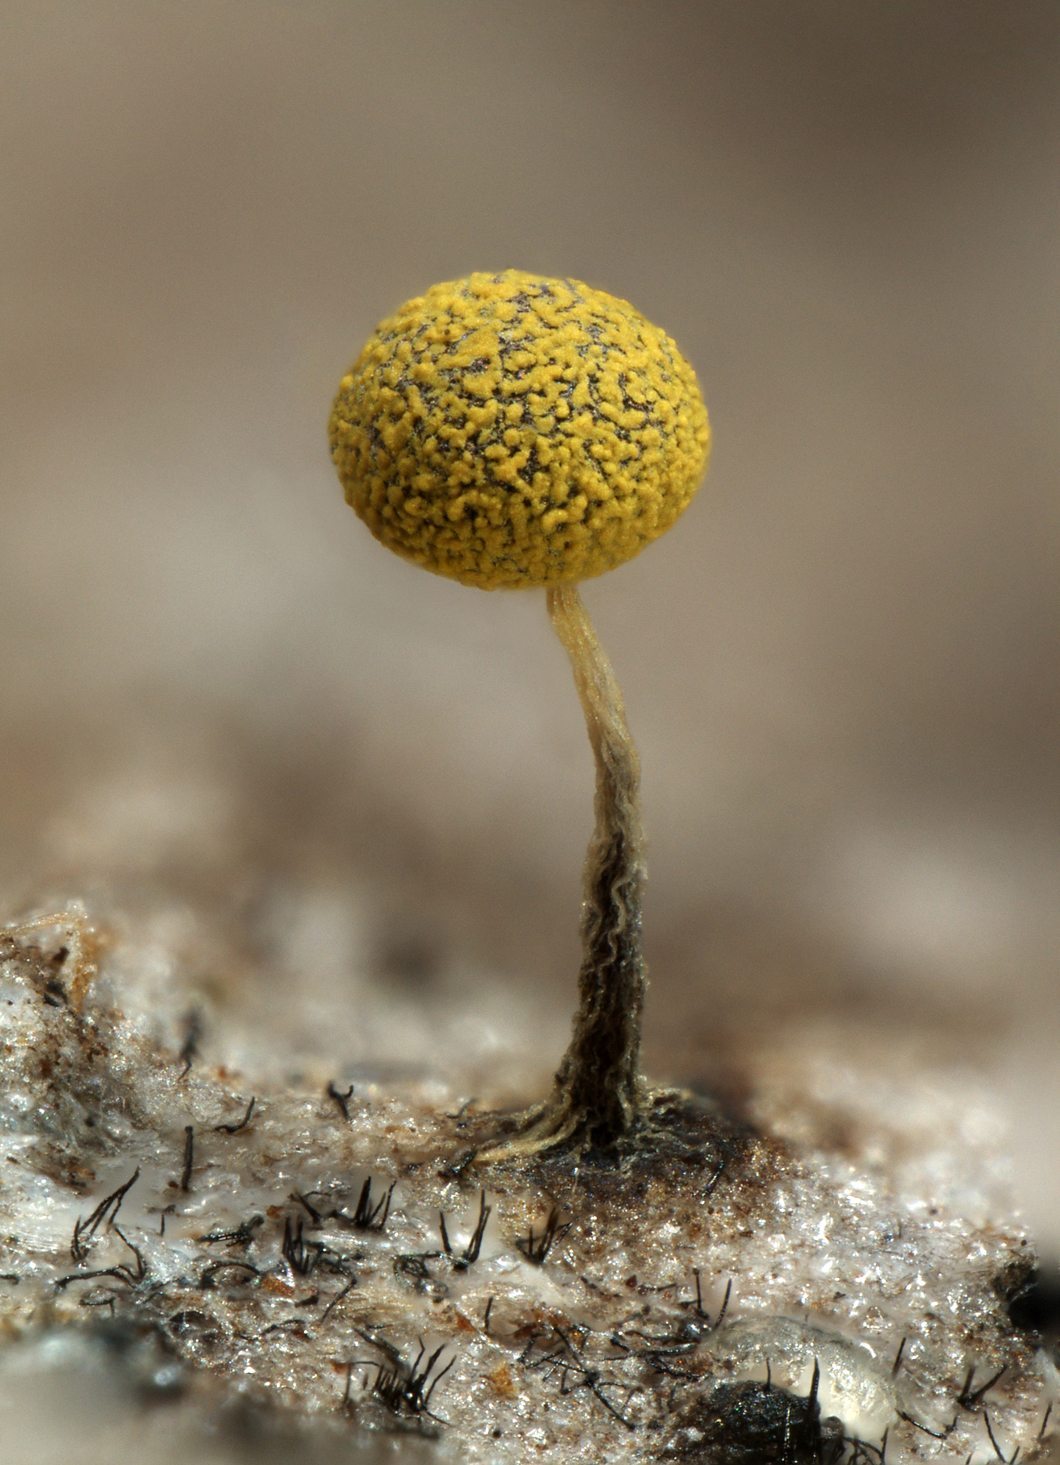 Ejemplar de "Physarum" encontrado durante la expedición. Un moho mucilaginoso del grupo Myxomycota, a menudo denominado moho de muchas cabezas. Imagen facilitada por el Real Jardín Botánico, CSIC